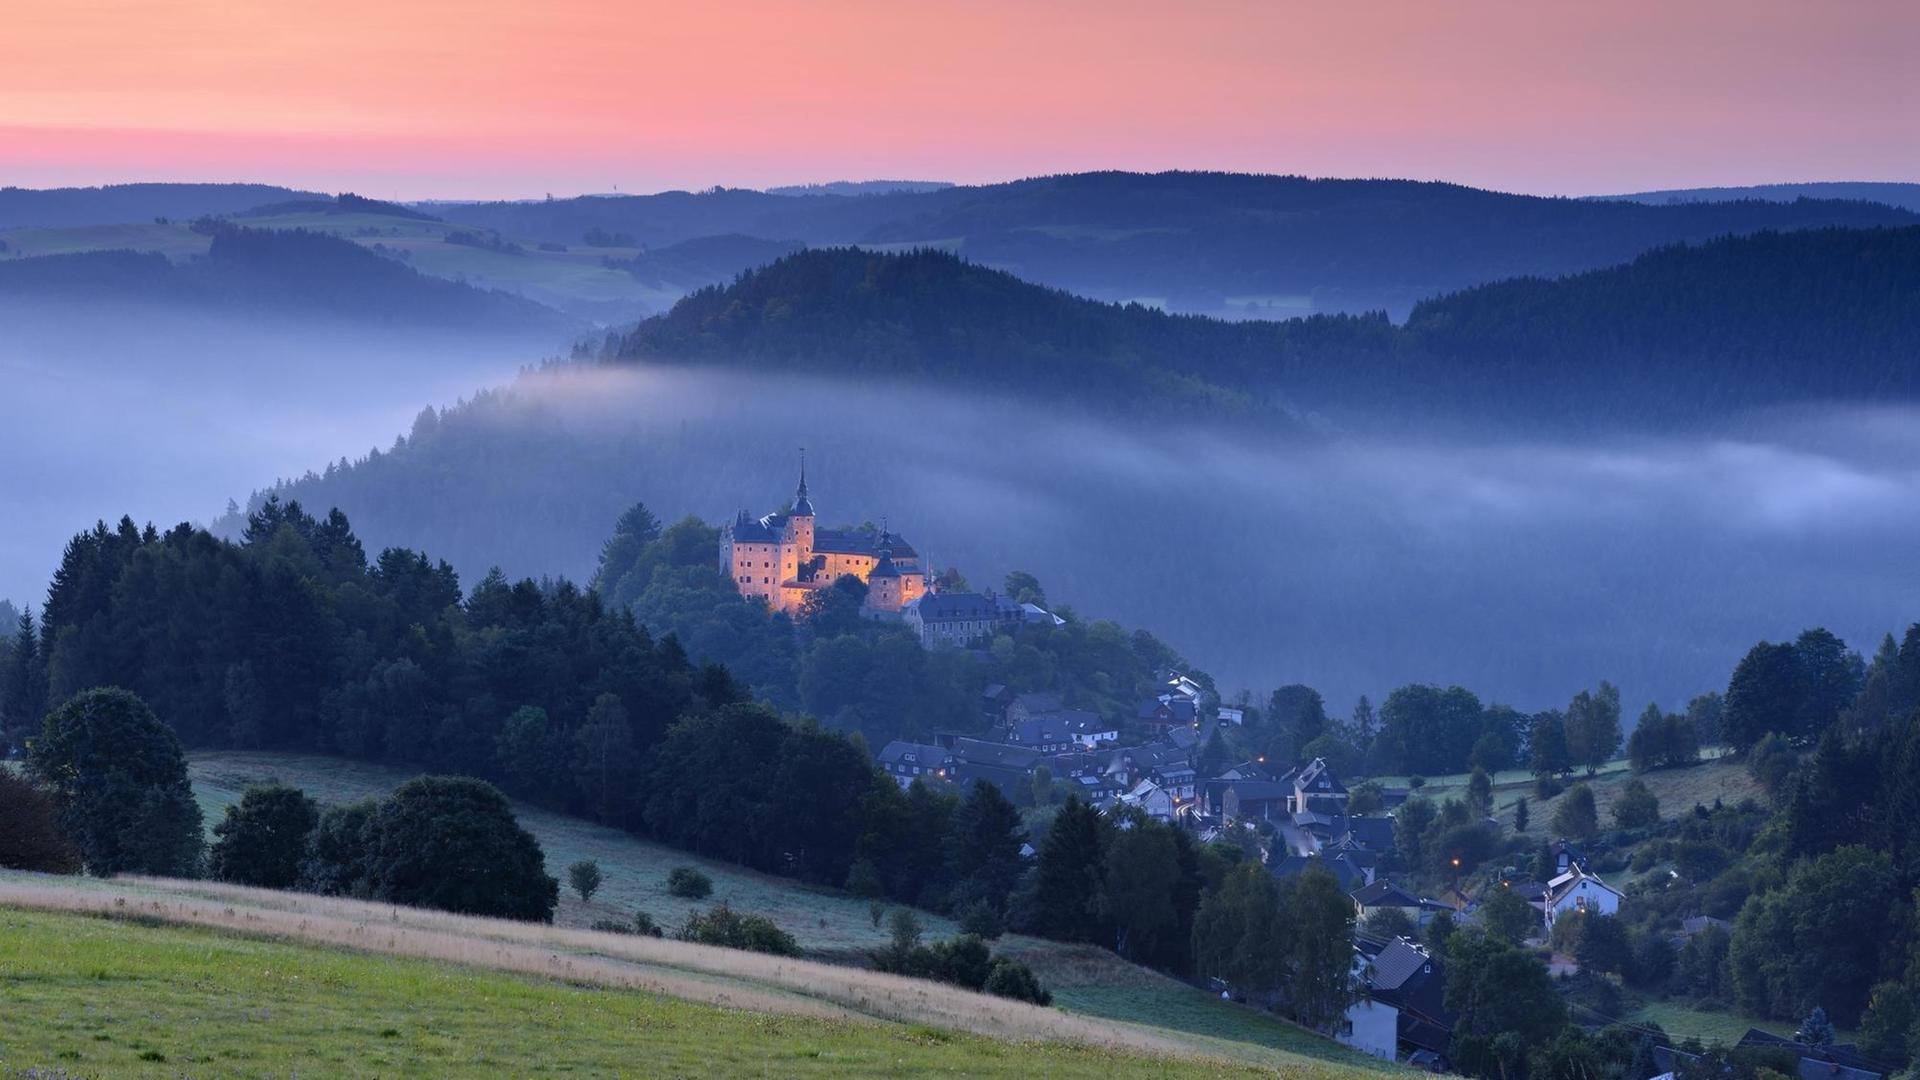 Die Burg Lauenstein liegt von Morgennebel umgeben über dem Dorf, darüber der Himmel glüht in den Farben des Sonnenaufgangs.